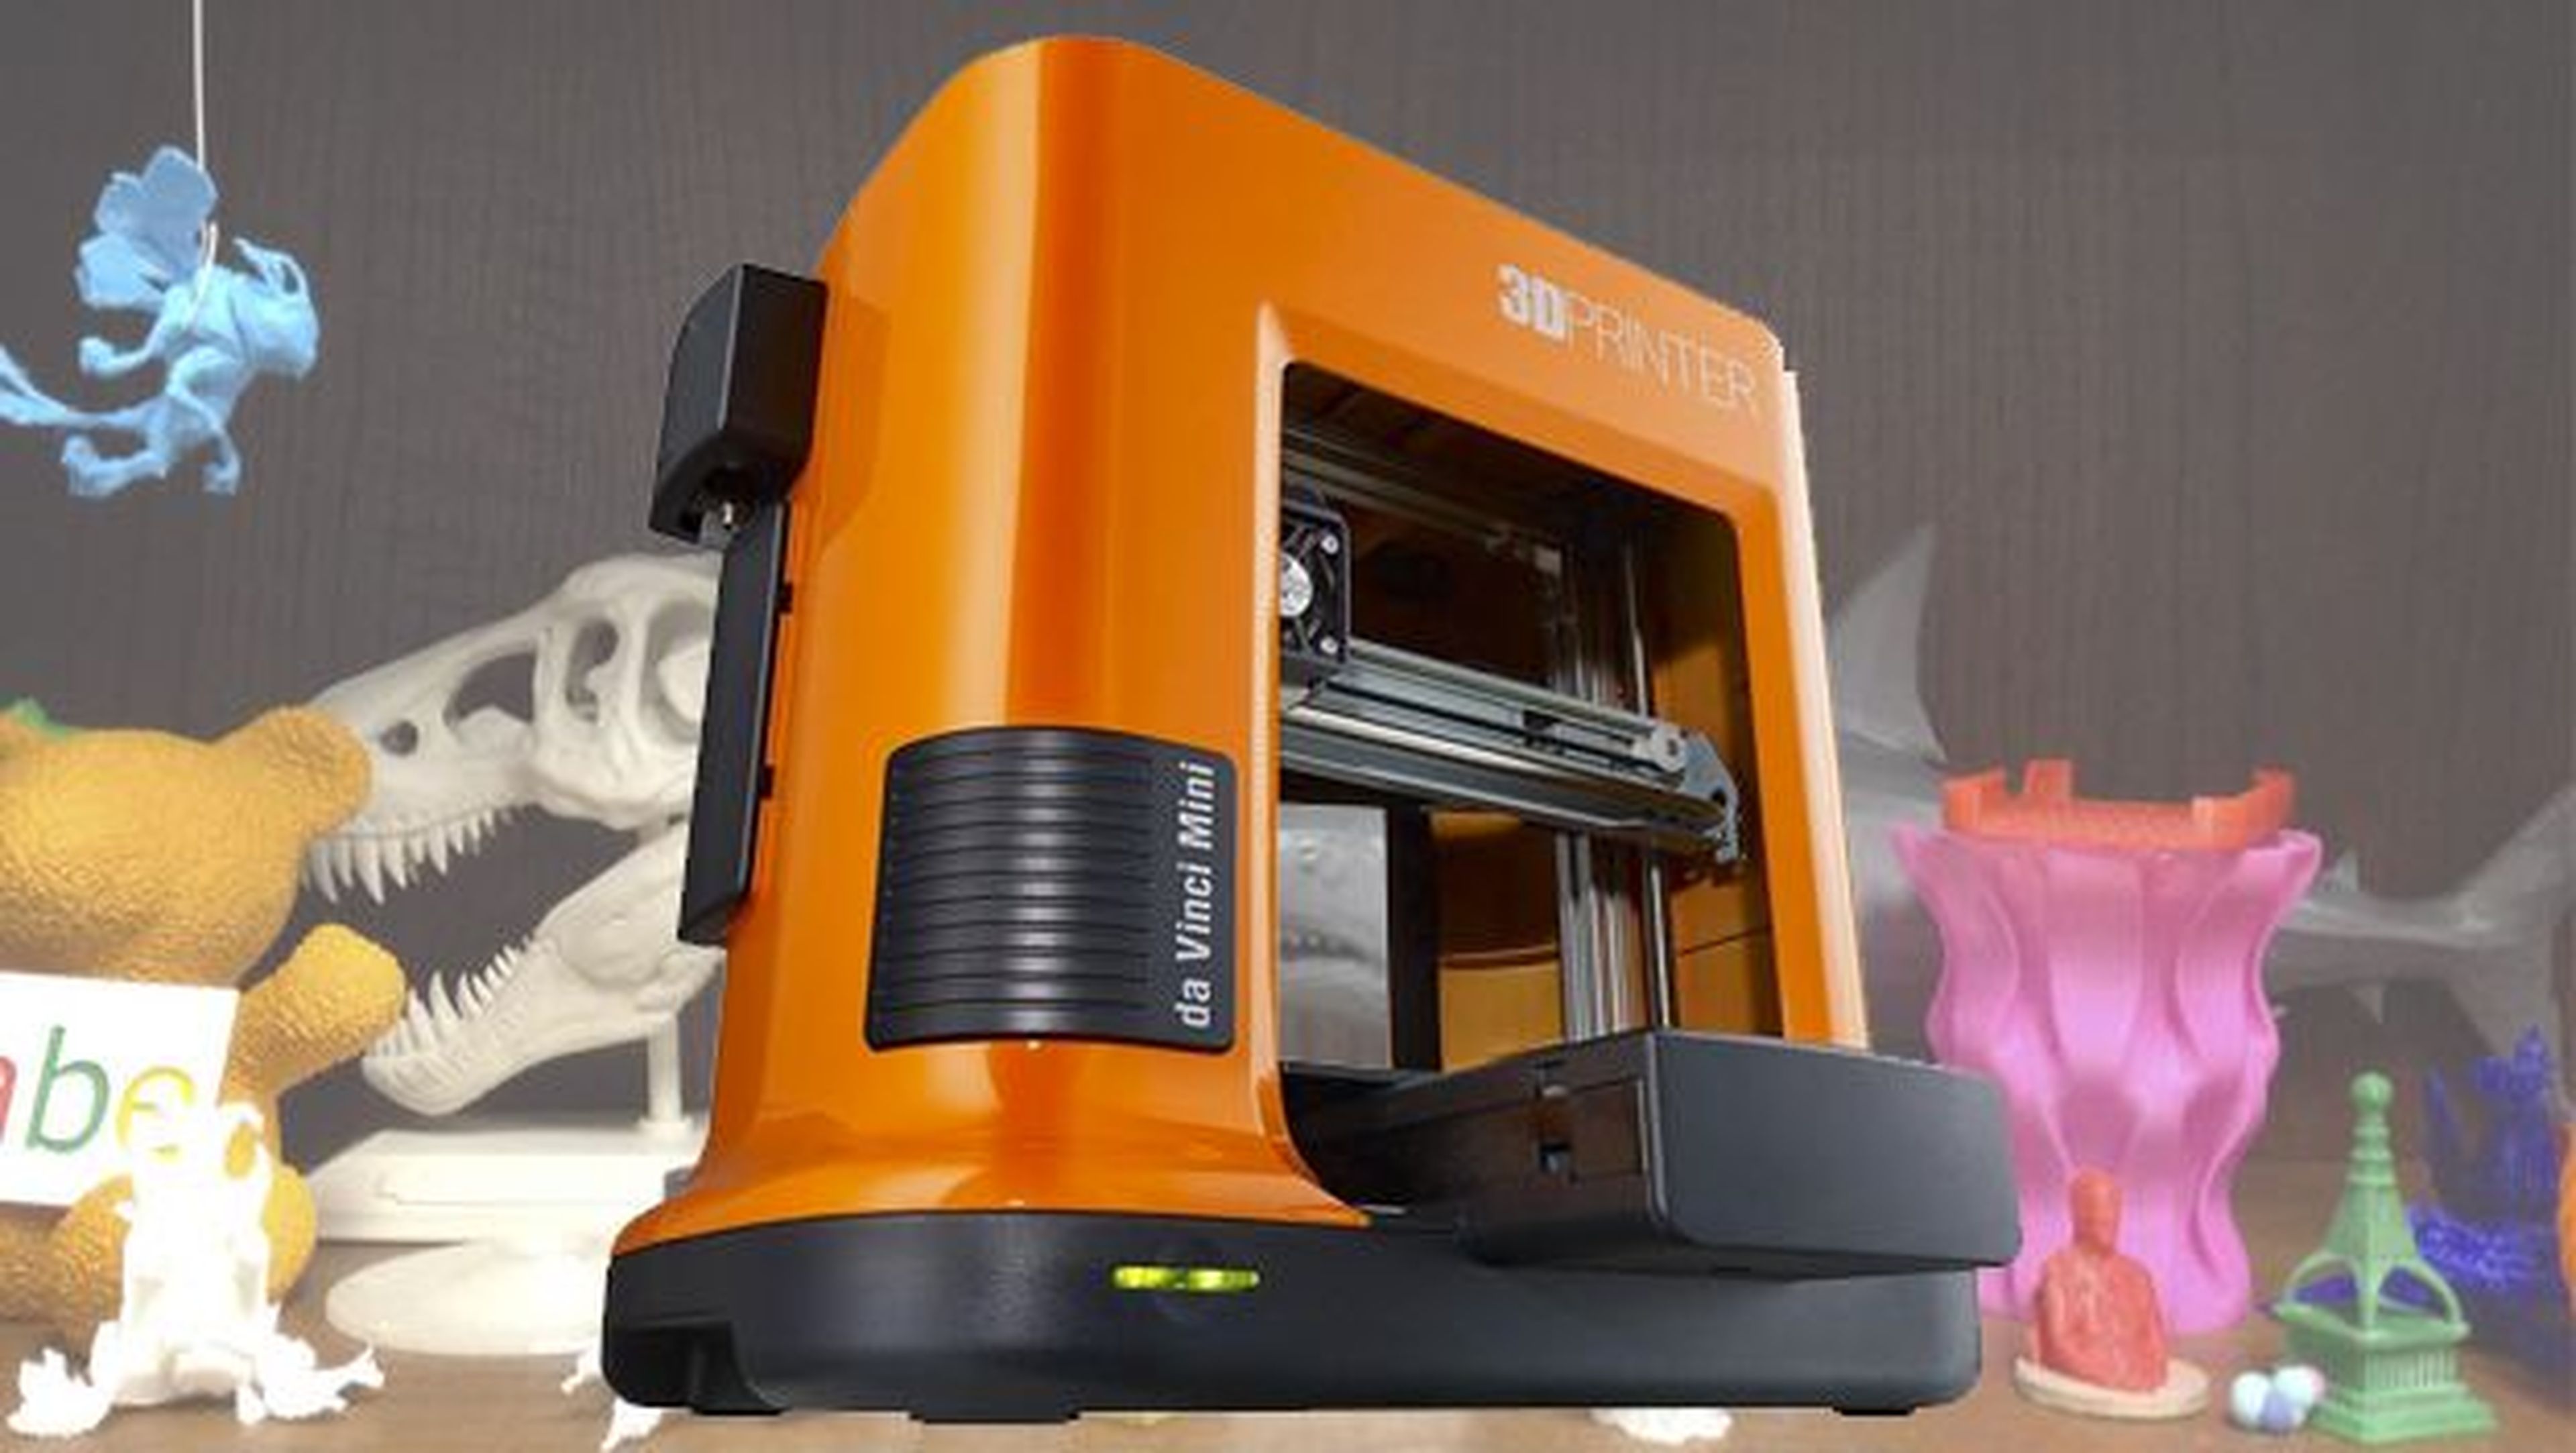 Las mejores impresoras 3D baratas